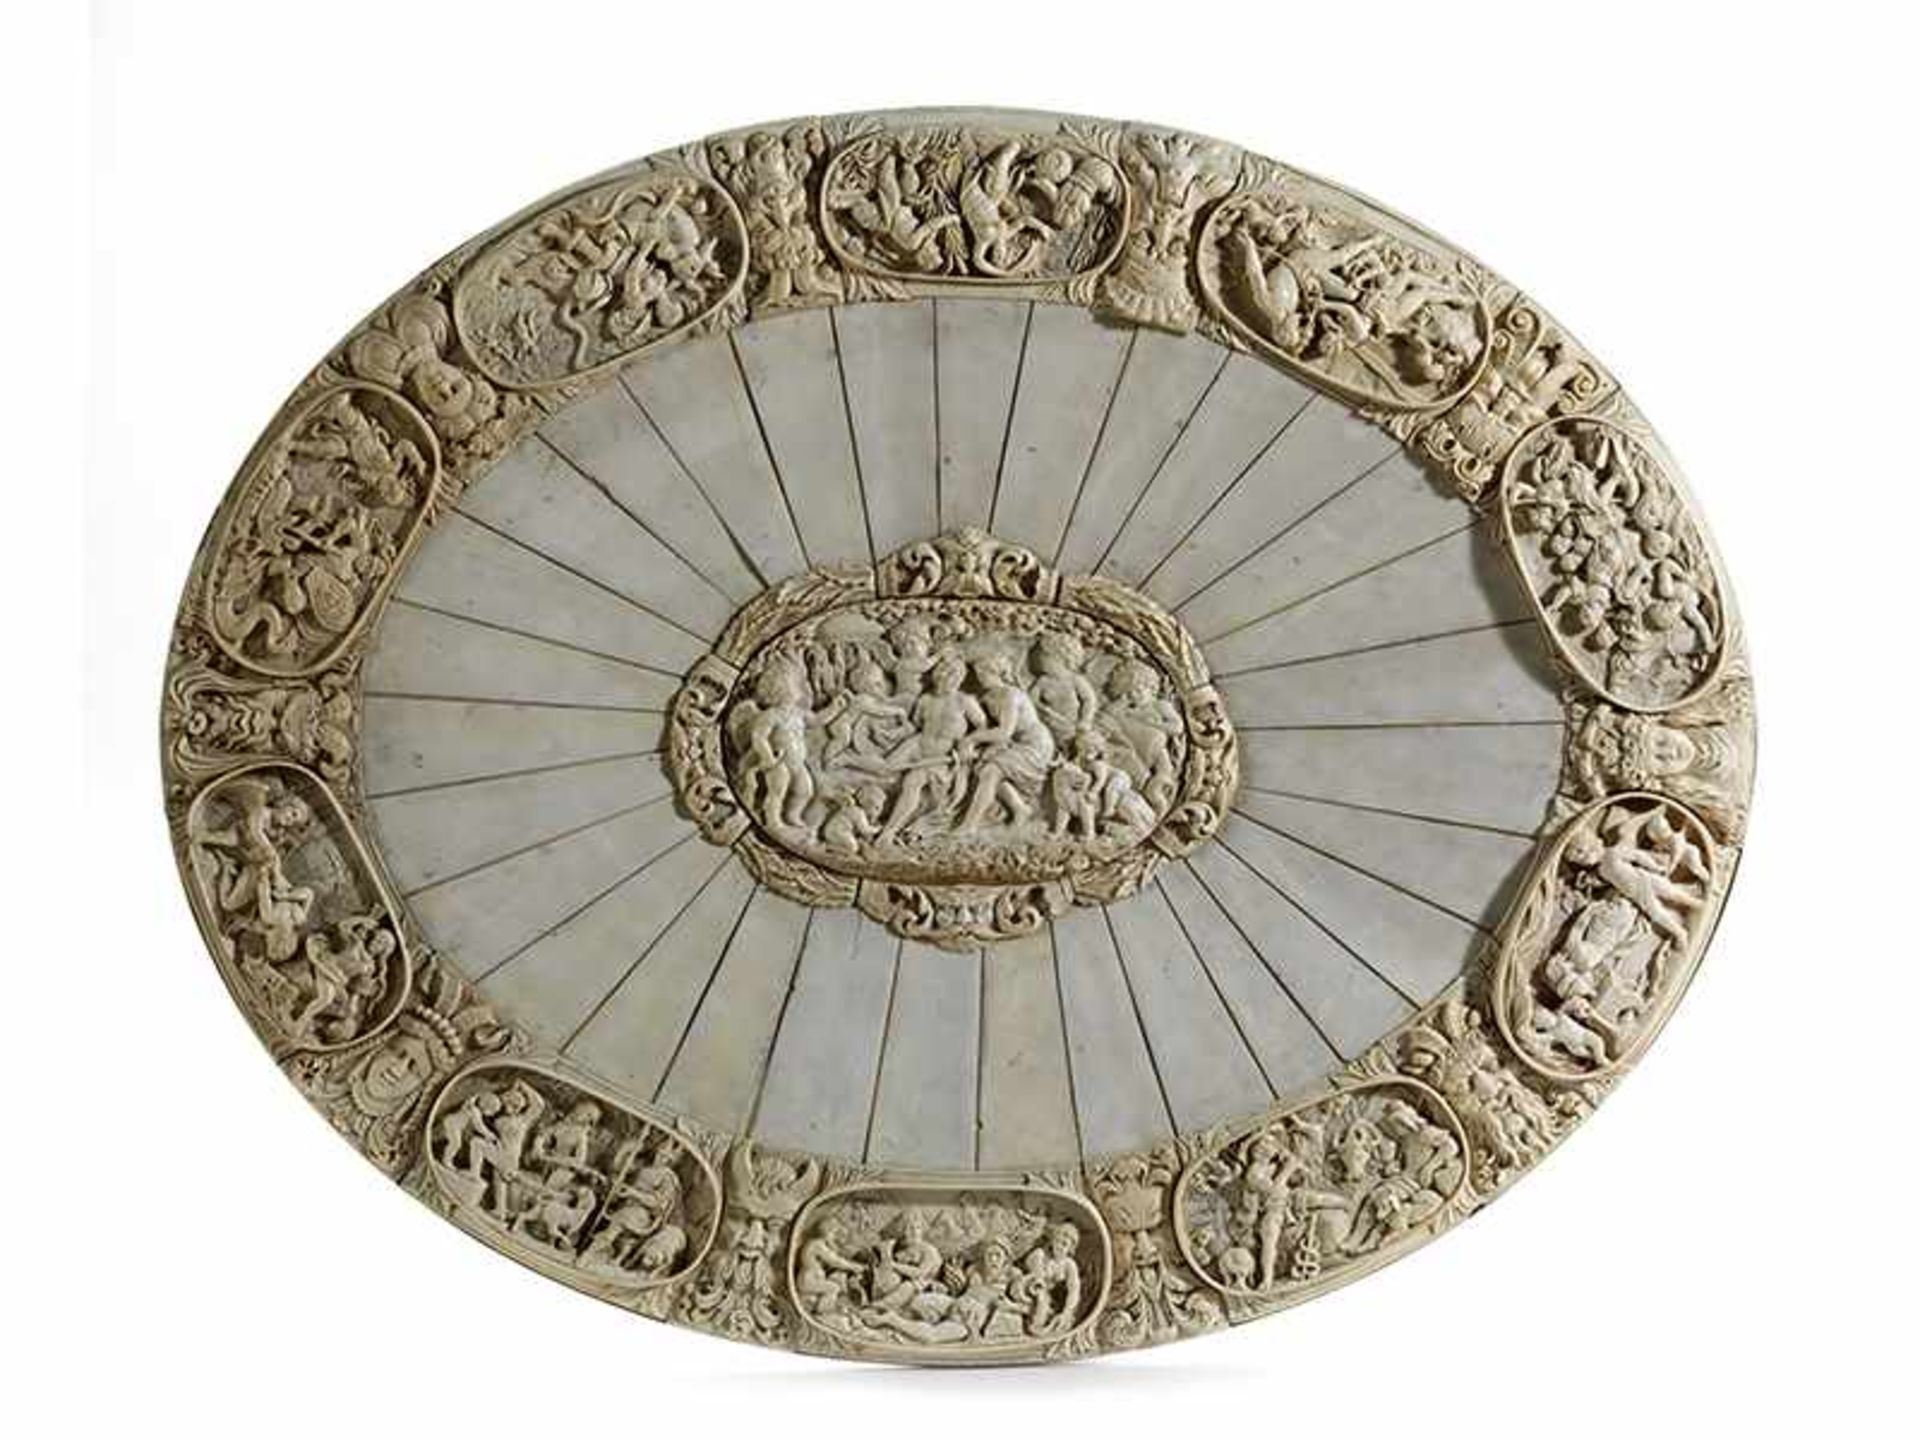 Monumentale äußerst fein gearbeitete ElfenbeinplatteMaximaler Durchmesser: 75 cm. Deutschland, 19.